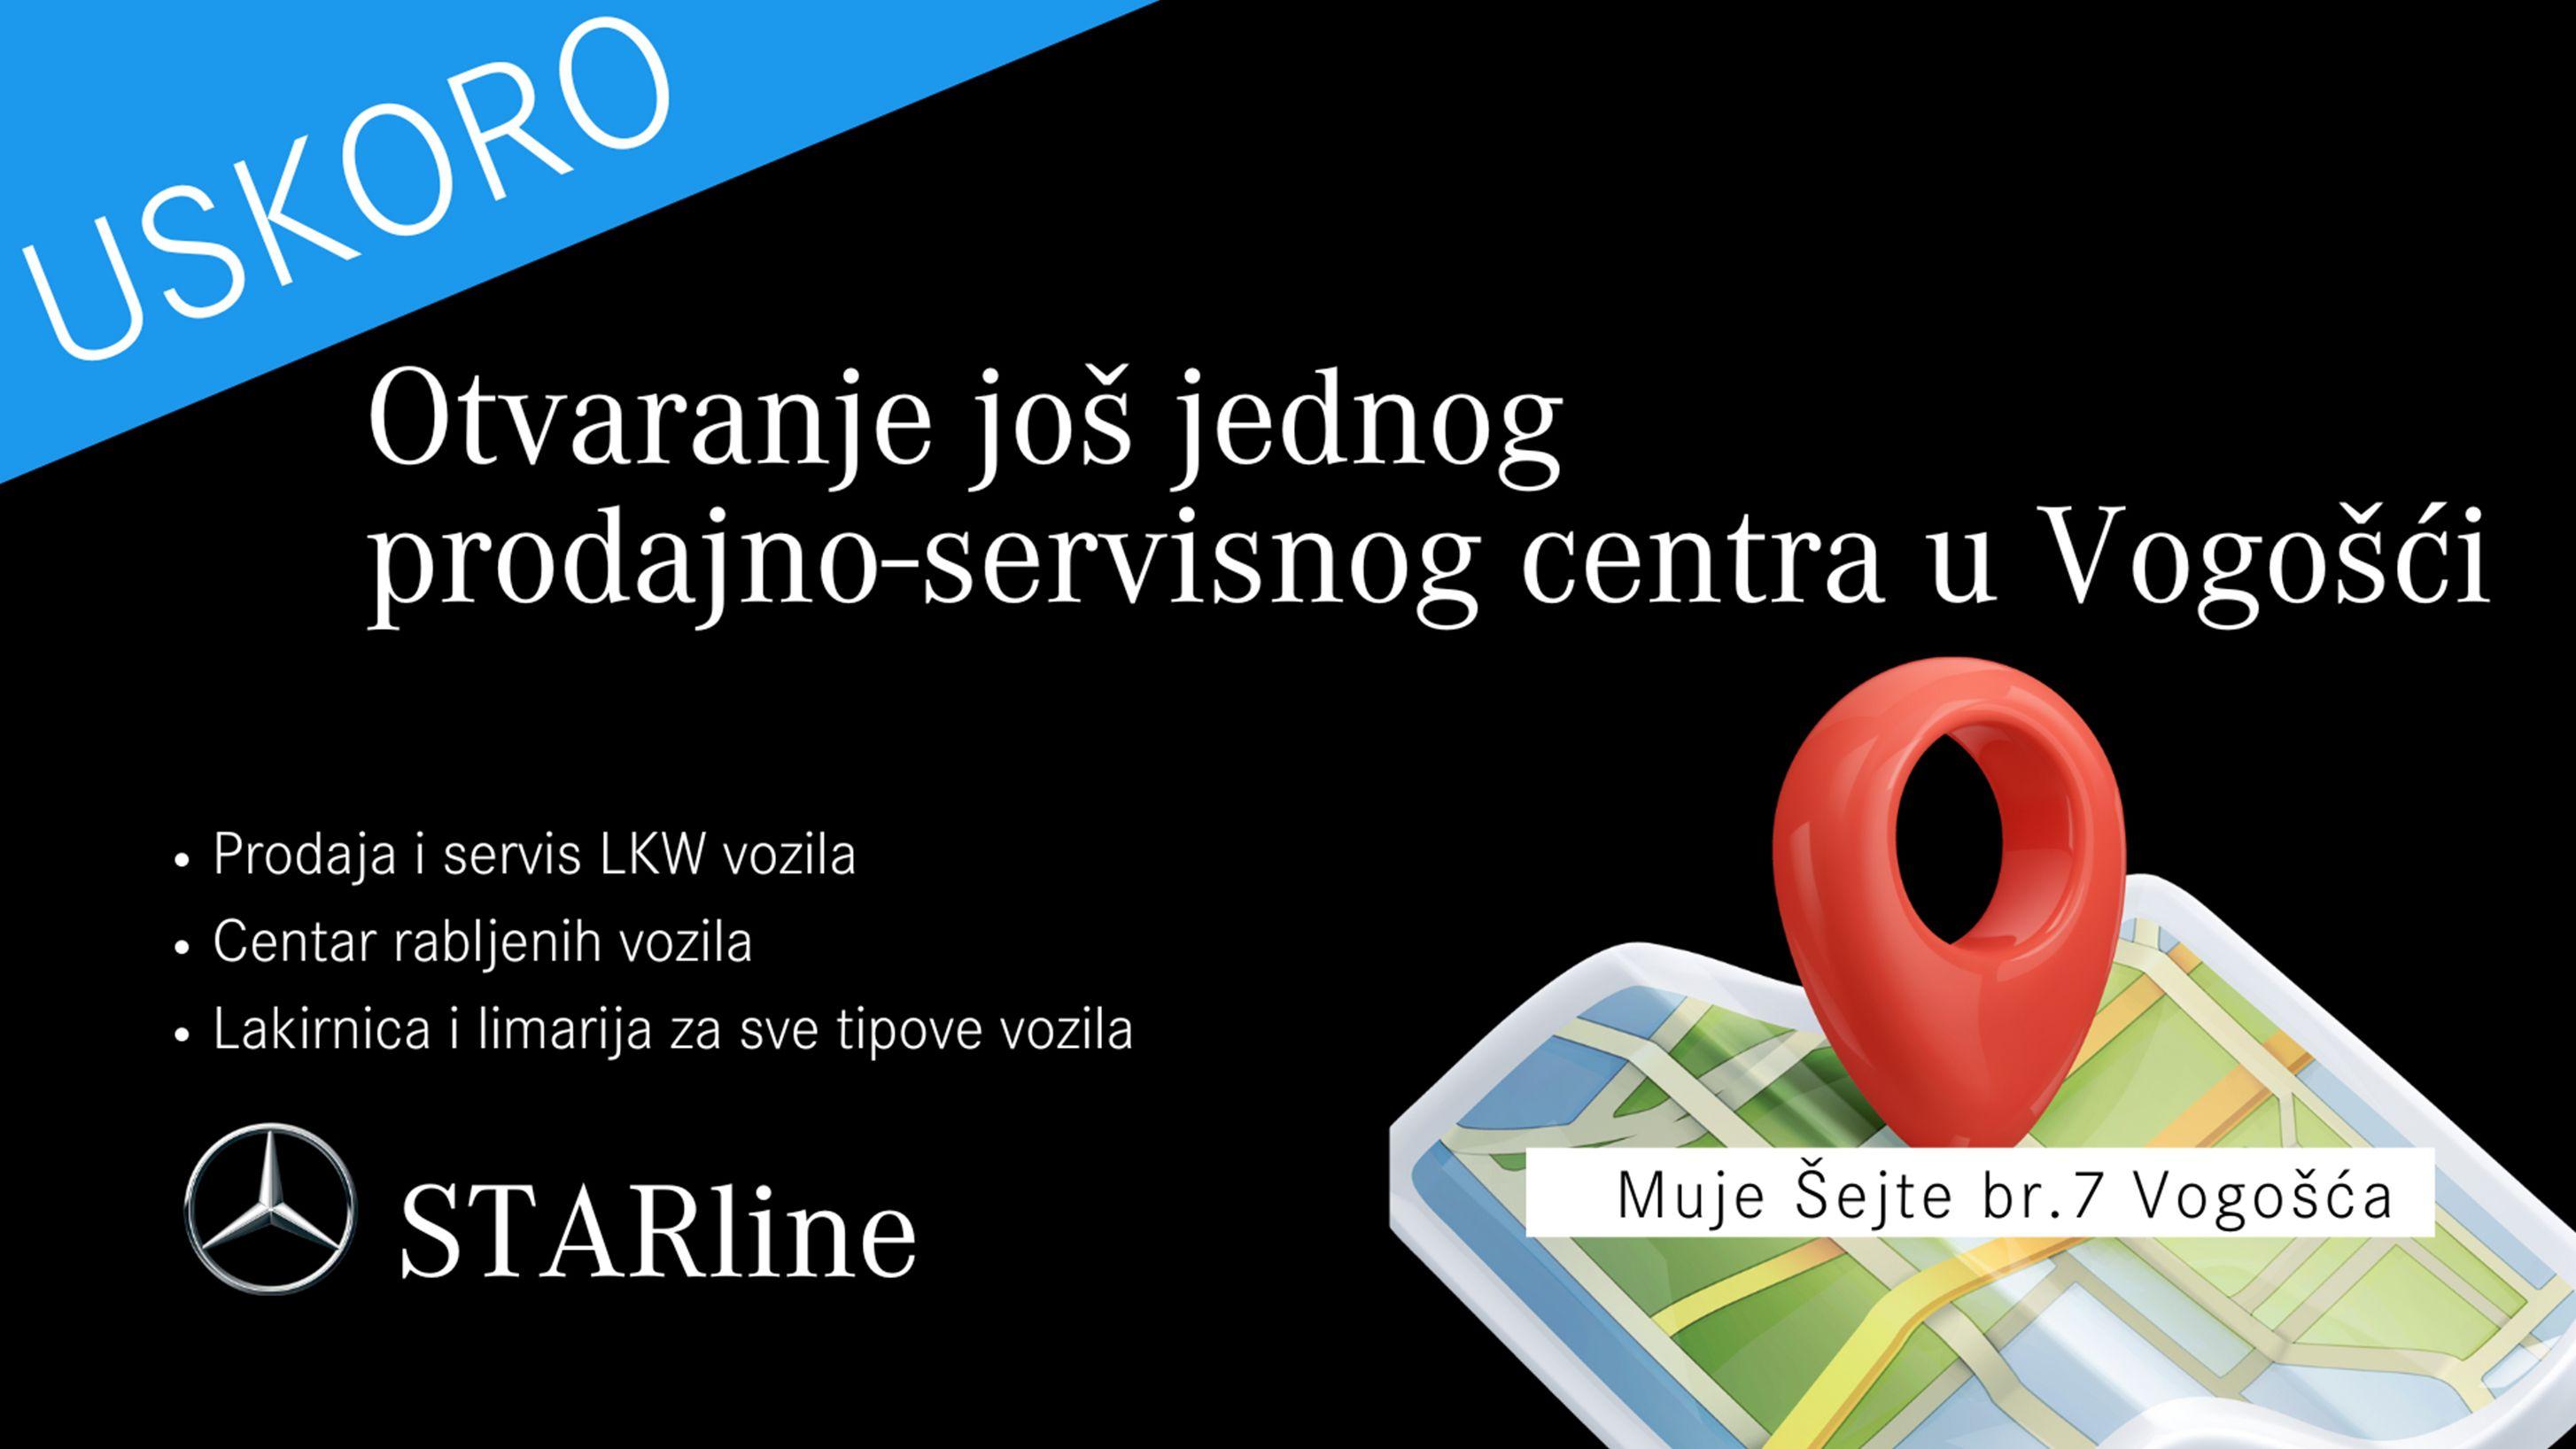 STARline Sarajevo otvara još jedan prodajno-servisni centar u Vogošći